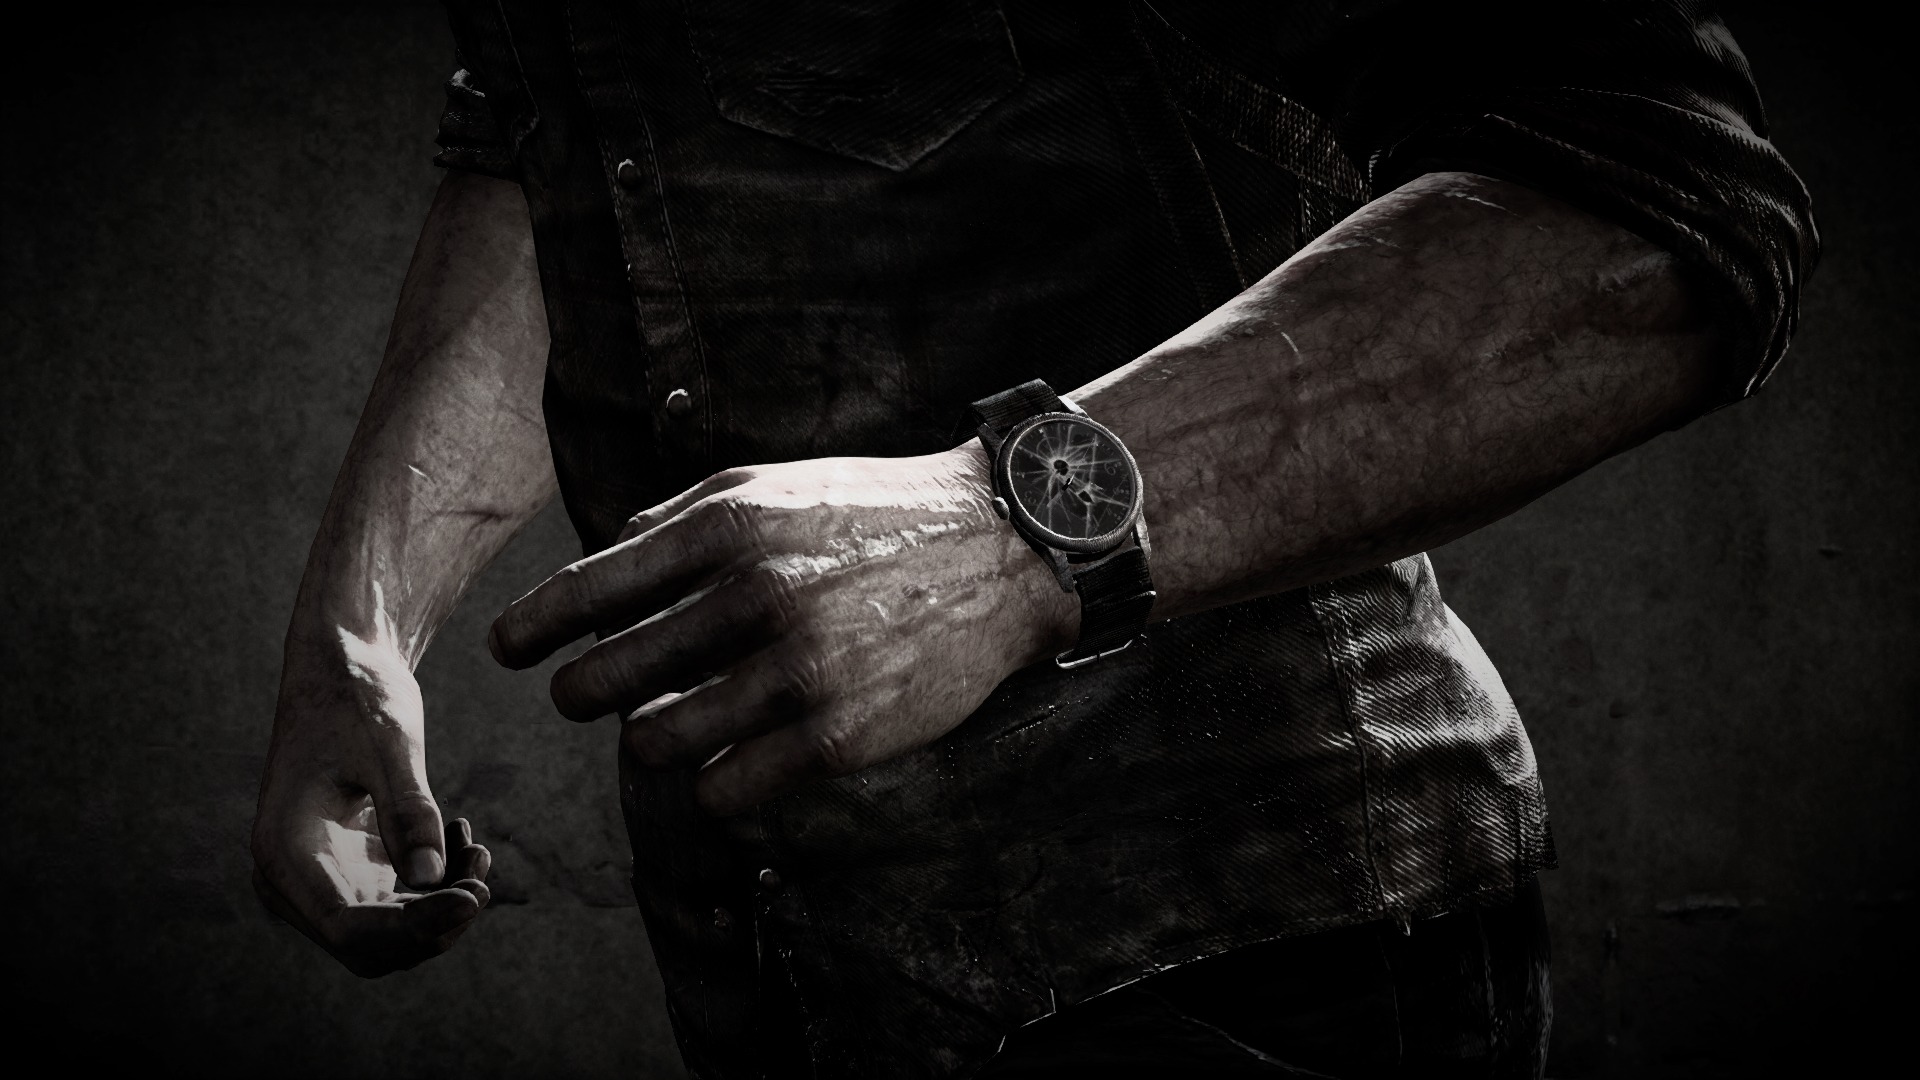 The Last of Us: Joels Watch 